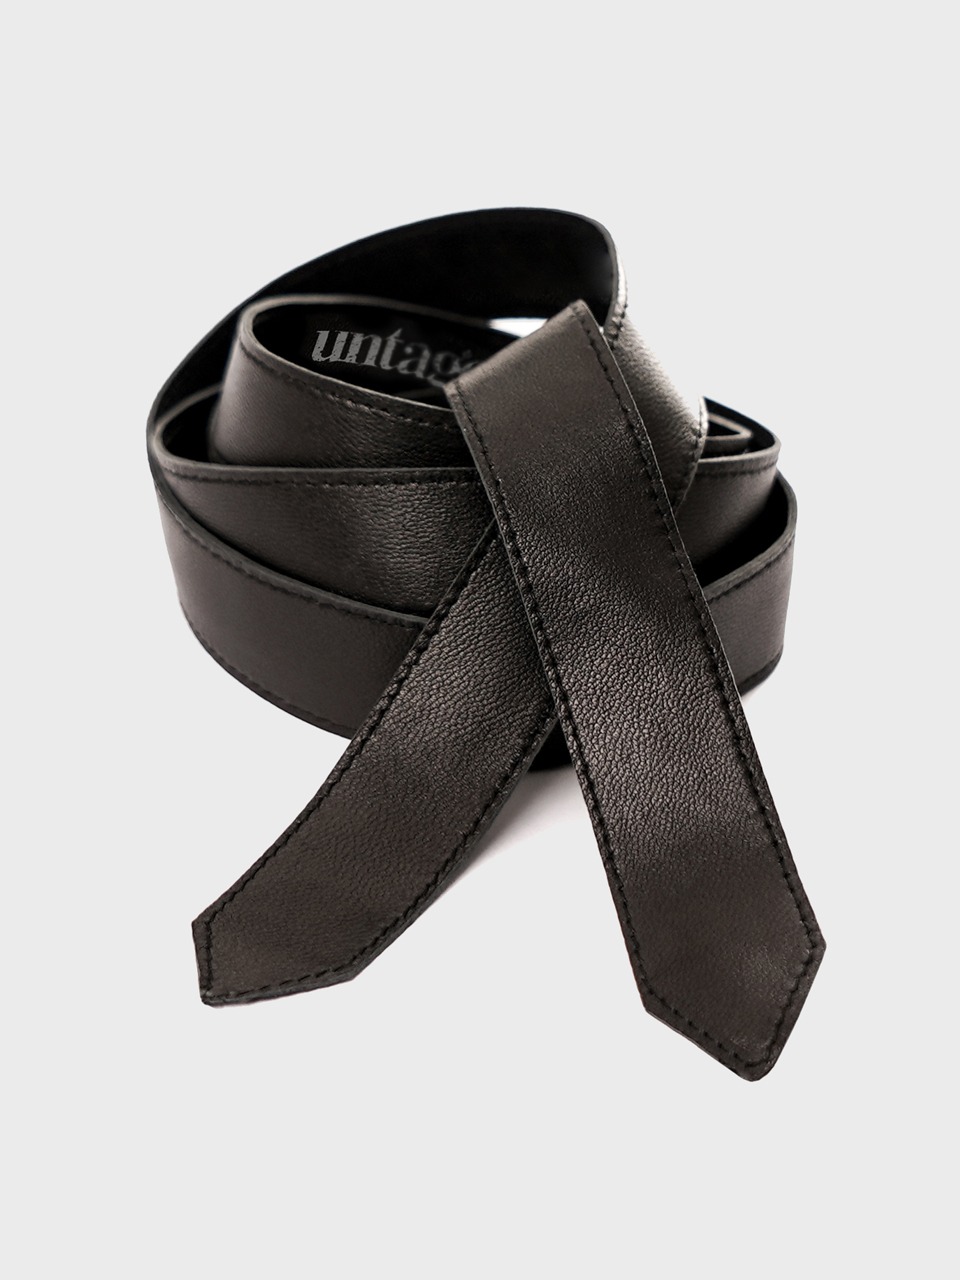 Leather Tie